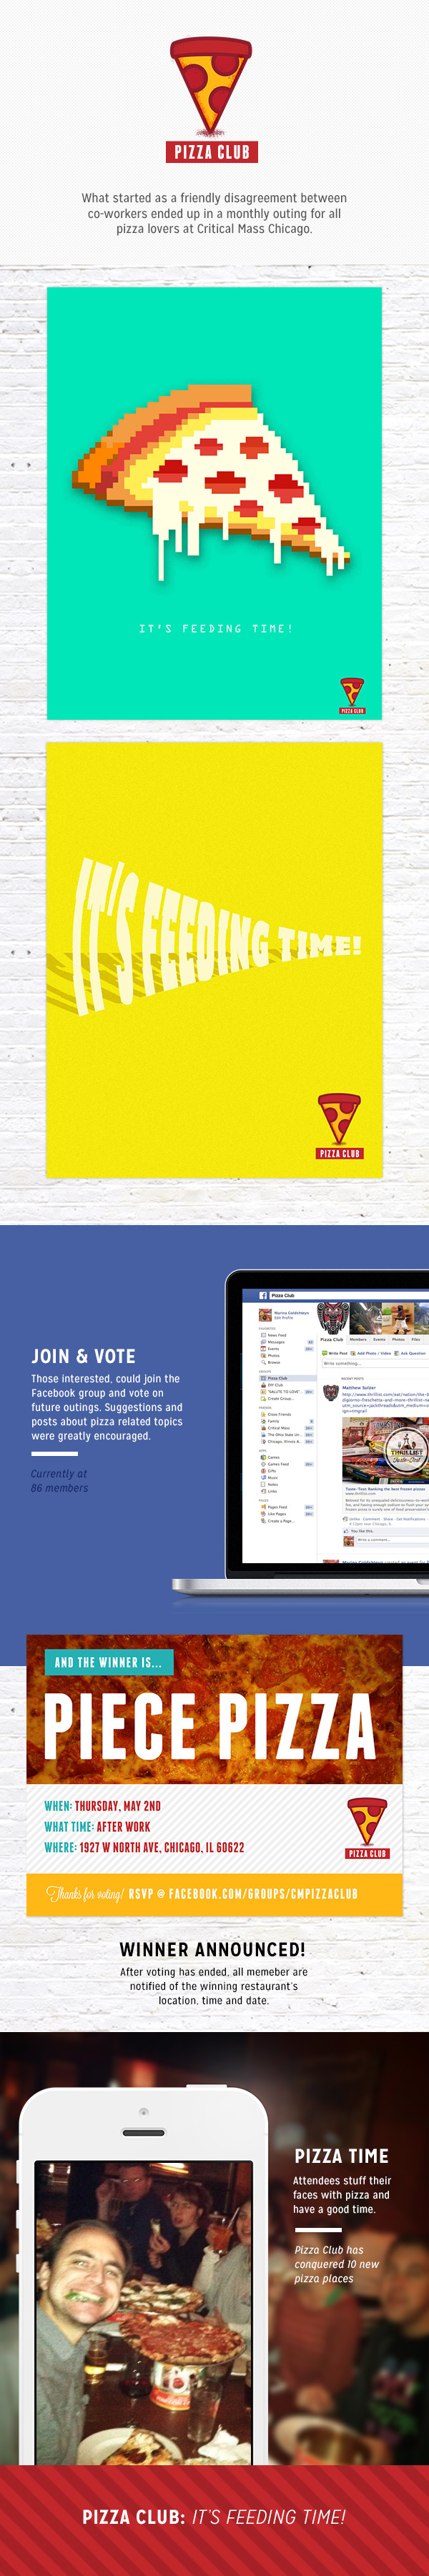 Pizza logo social media